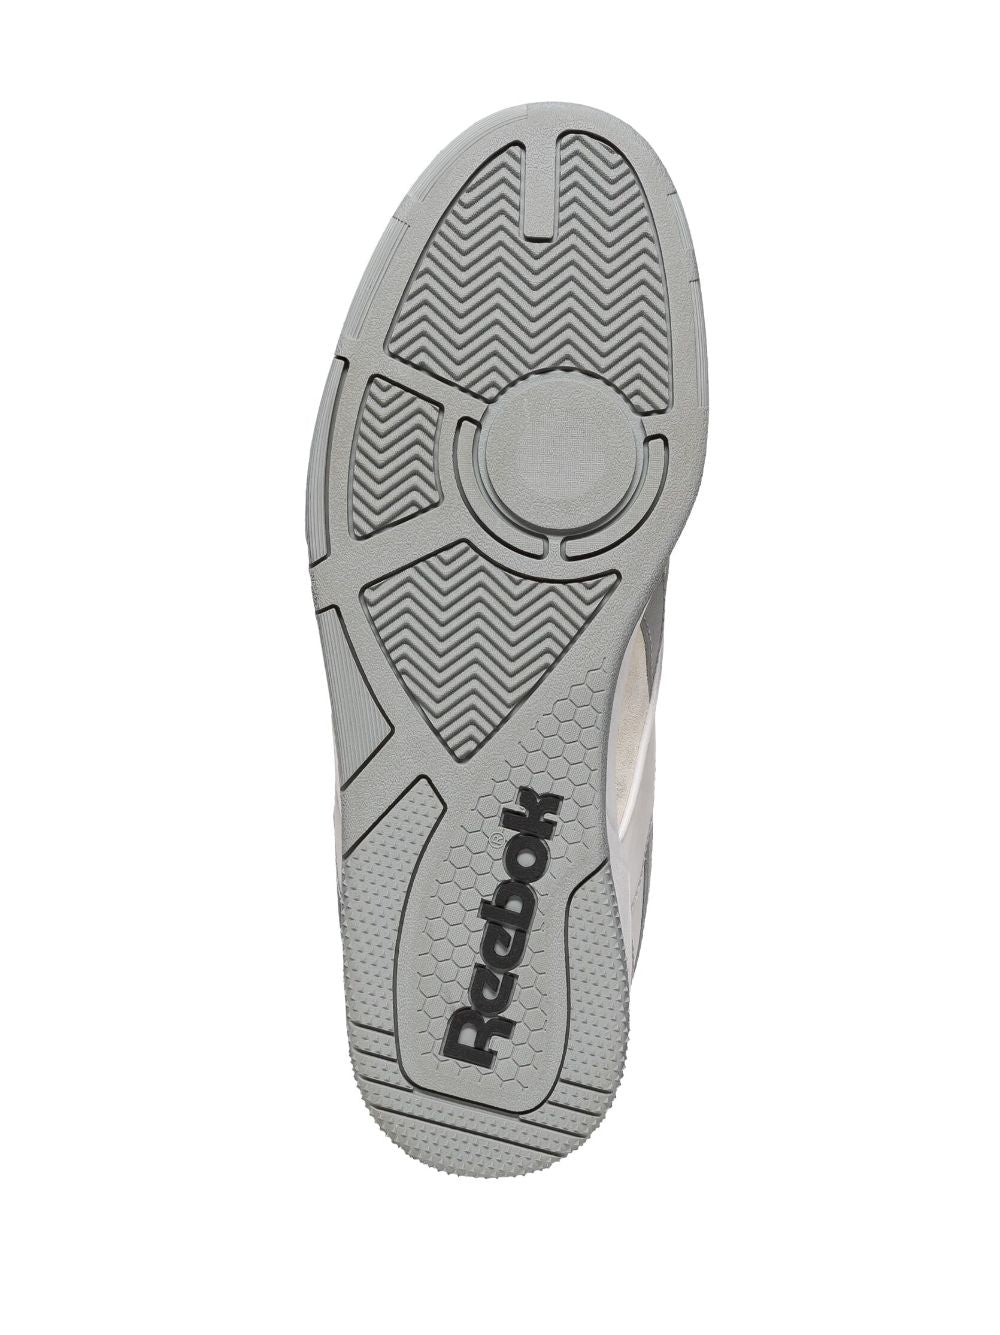 Sneaker BB 4000 II in ecopelle grigia